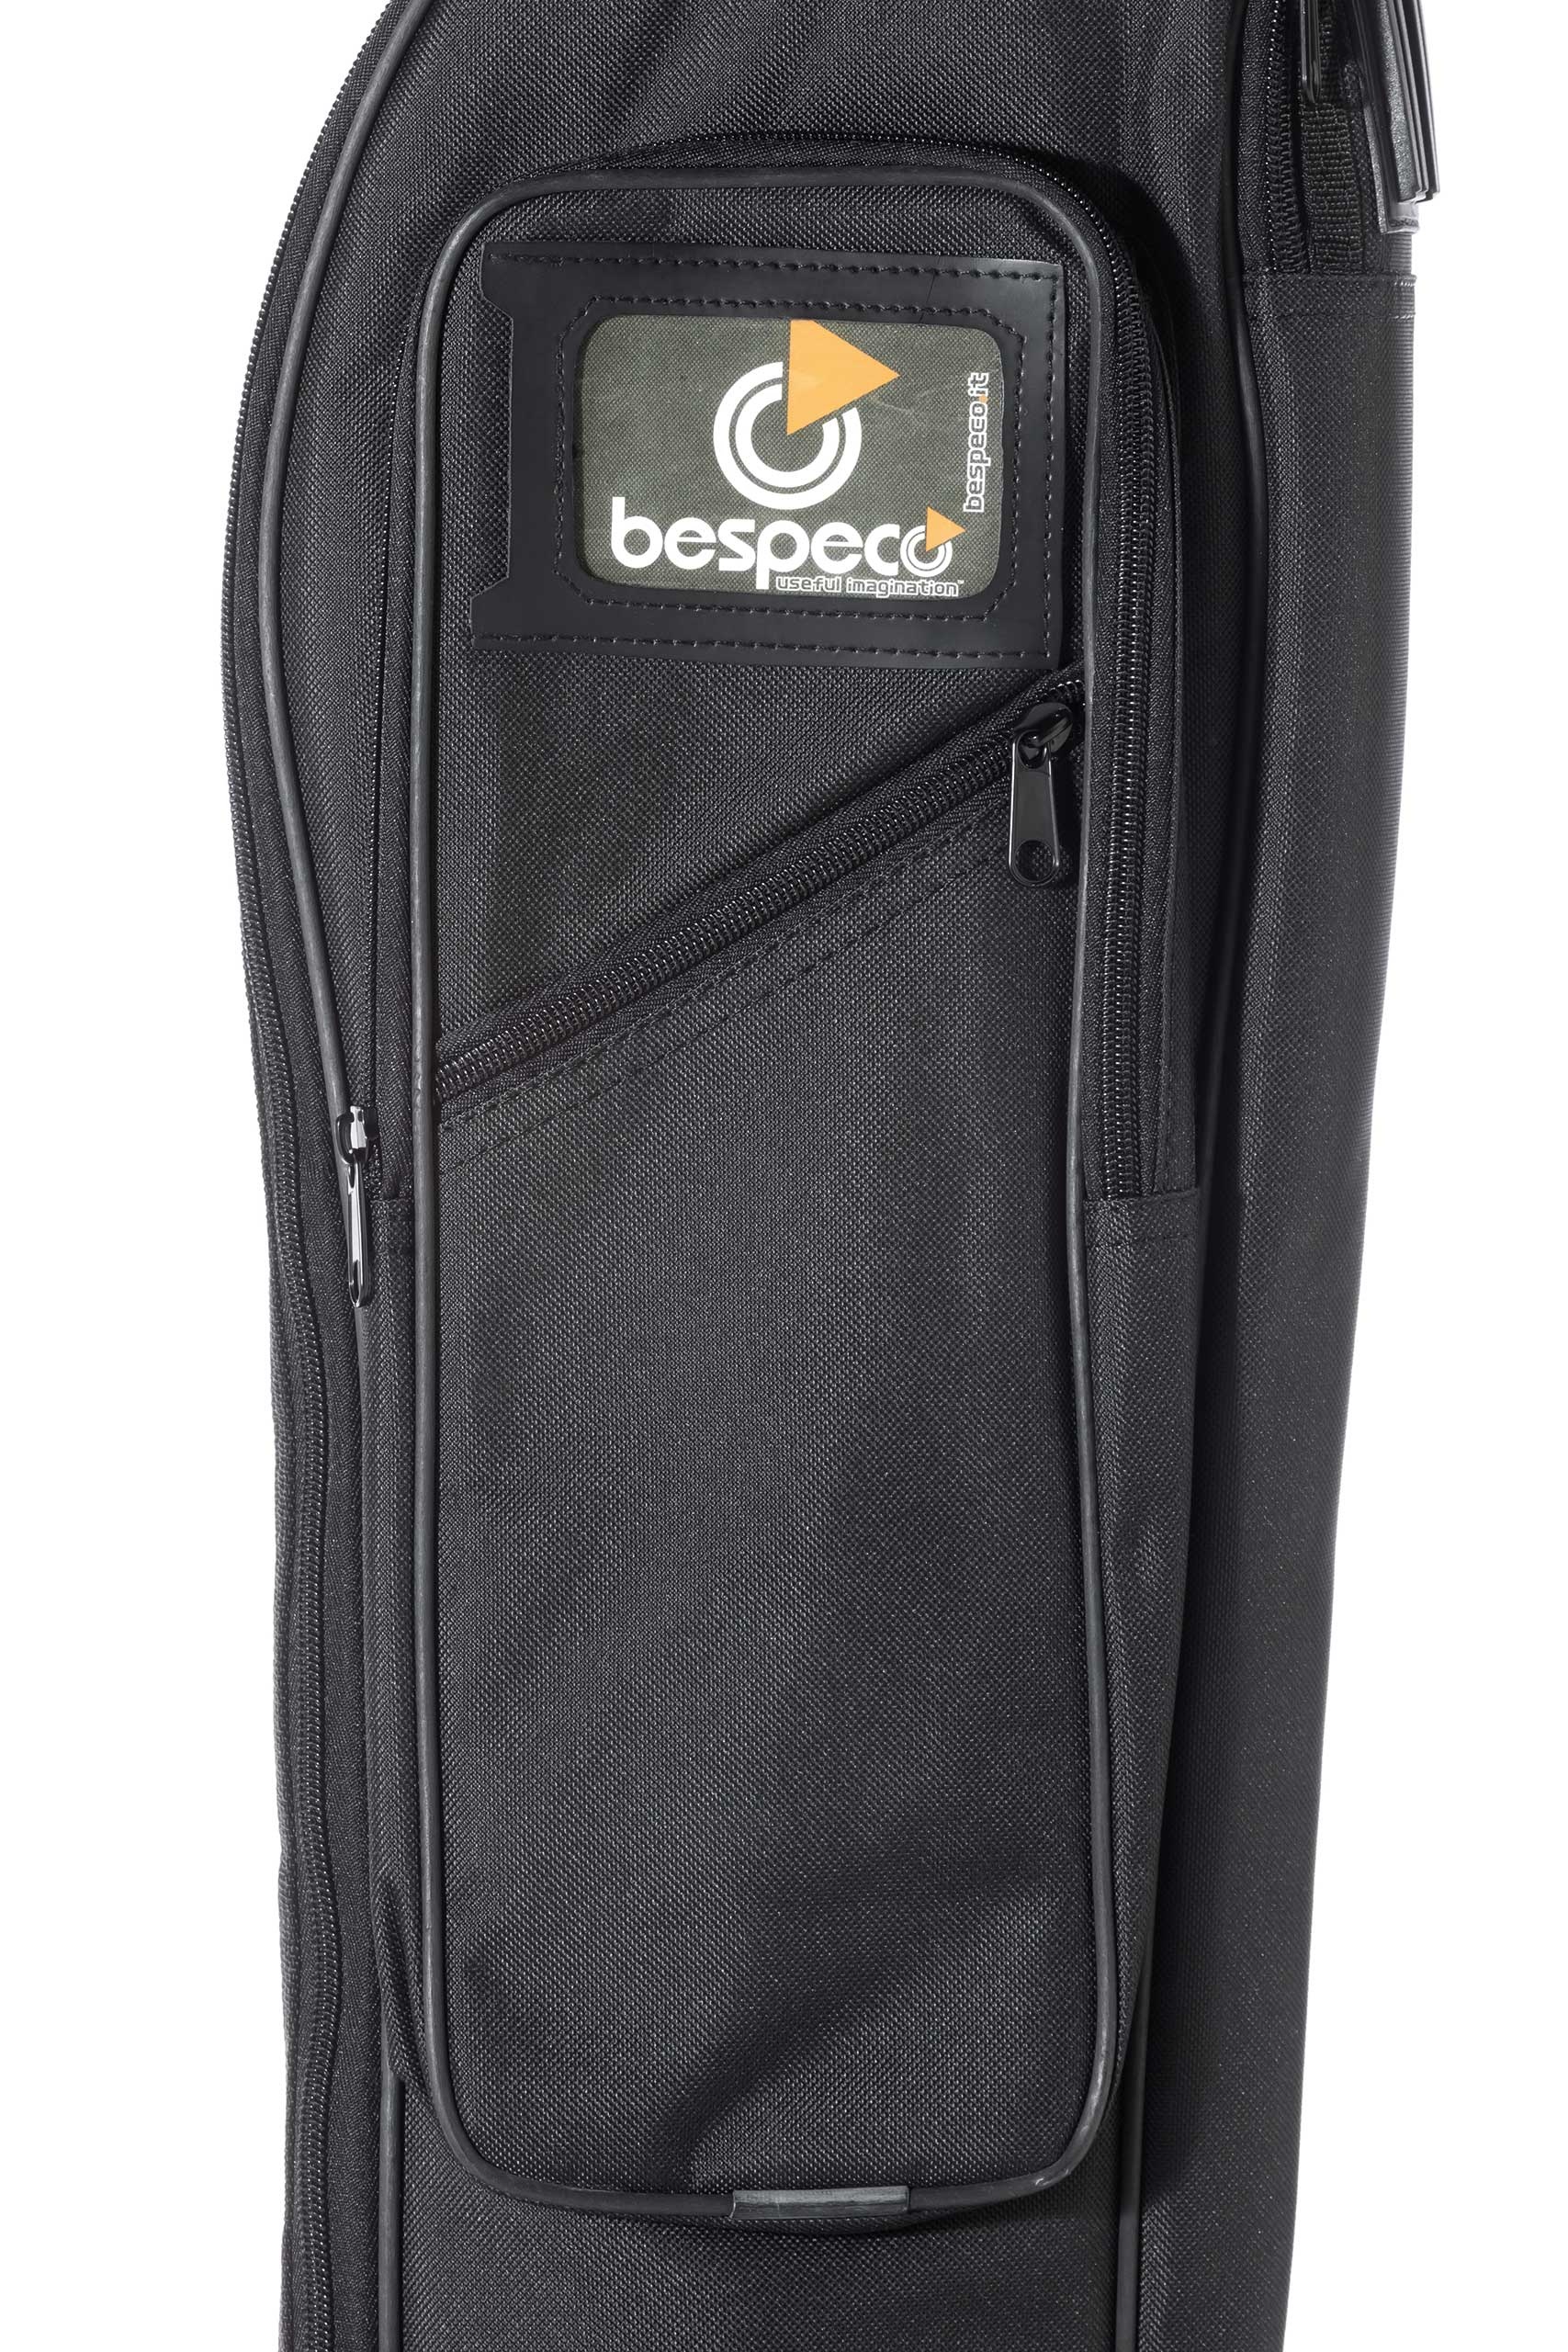 bag230bg-borsa-per-basso-elettrico-imbottitura-15-mm-nera